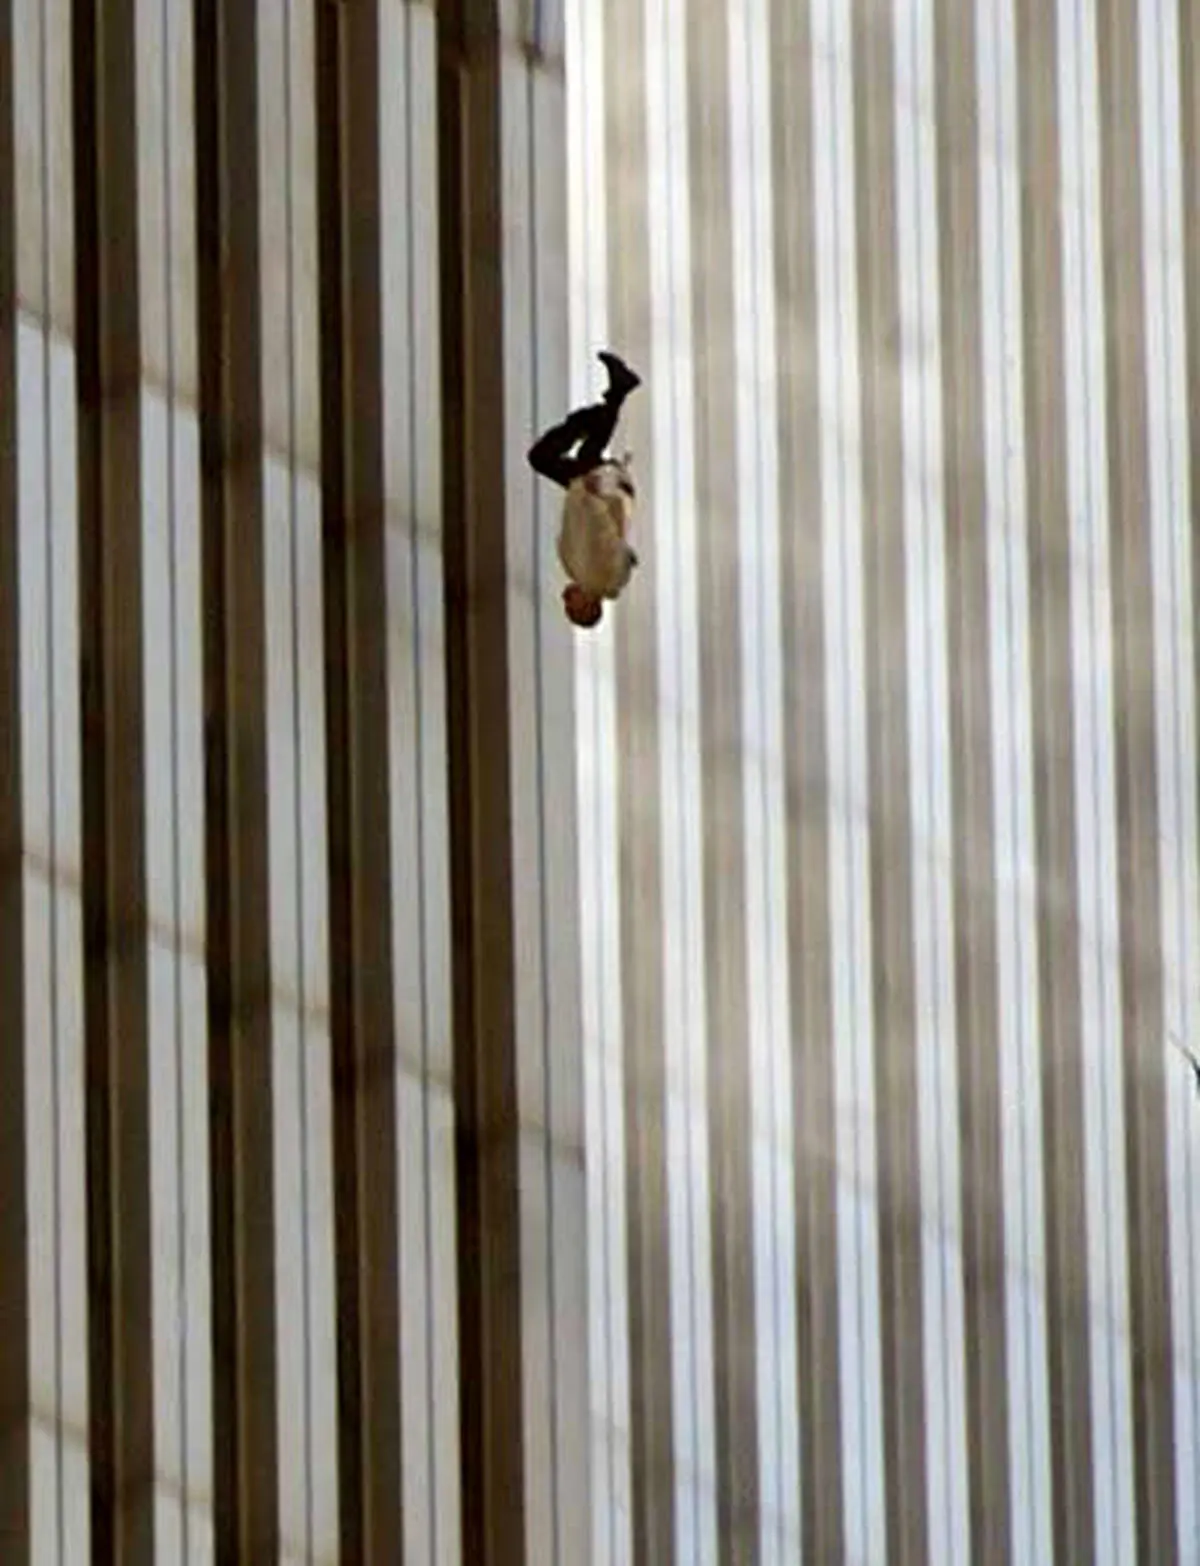 فیلم و عکس های دیده نشده از سقوط زن سوئیسی از برج کامرانیه